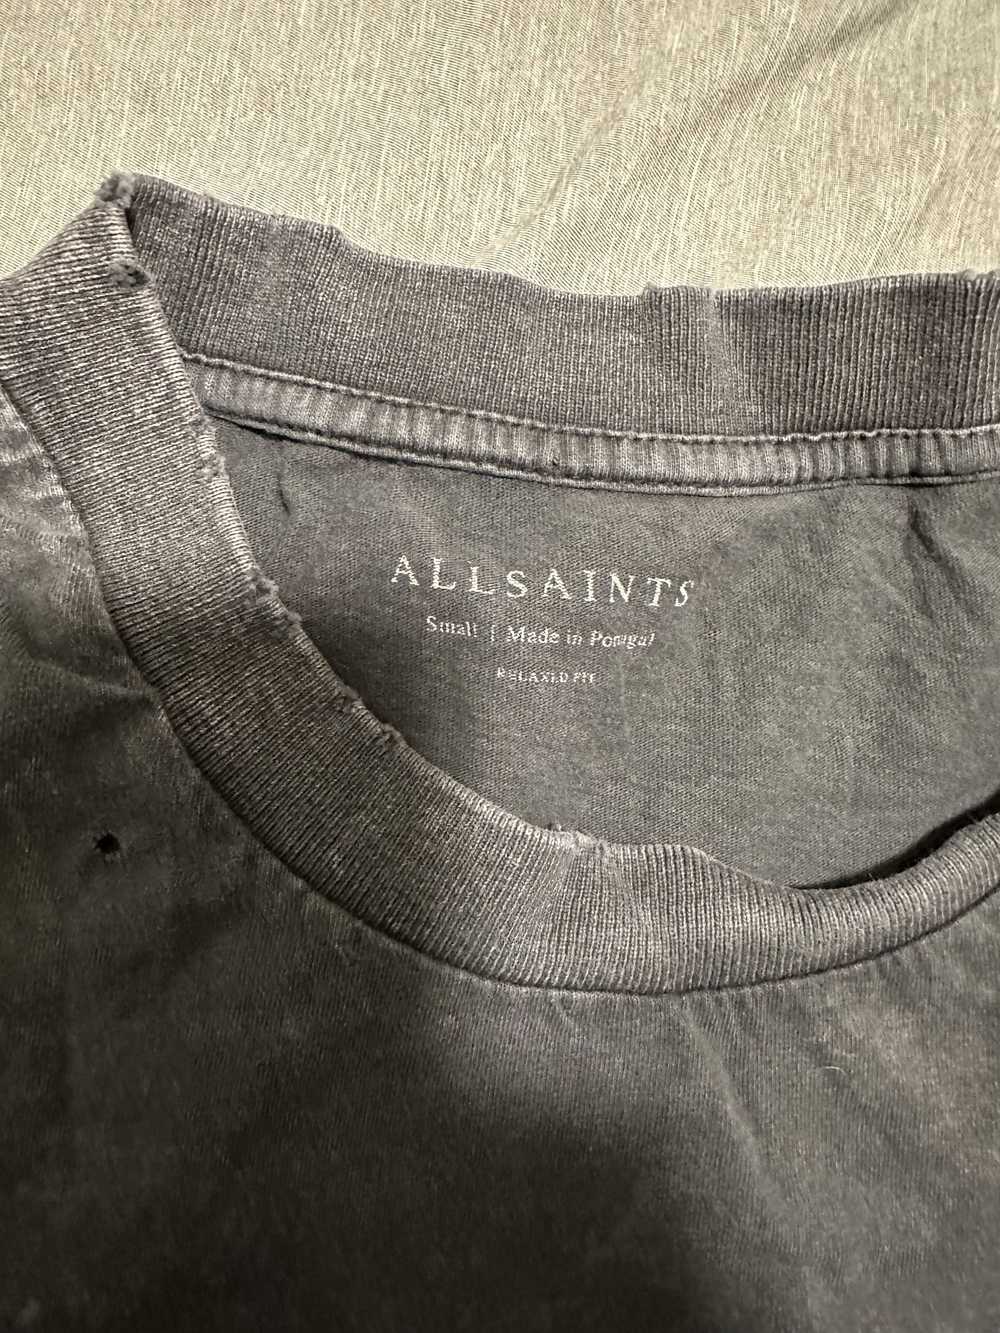 Allsaints Allsaints Distressed Shirt - image 3